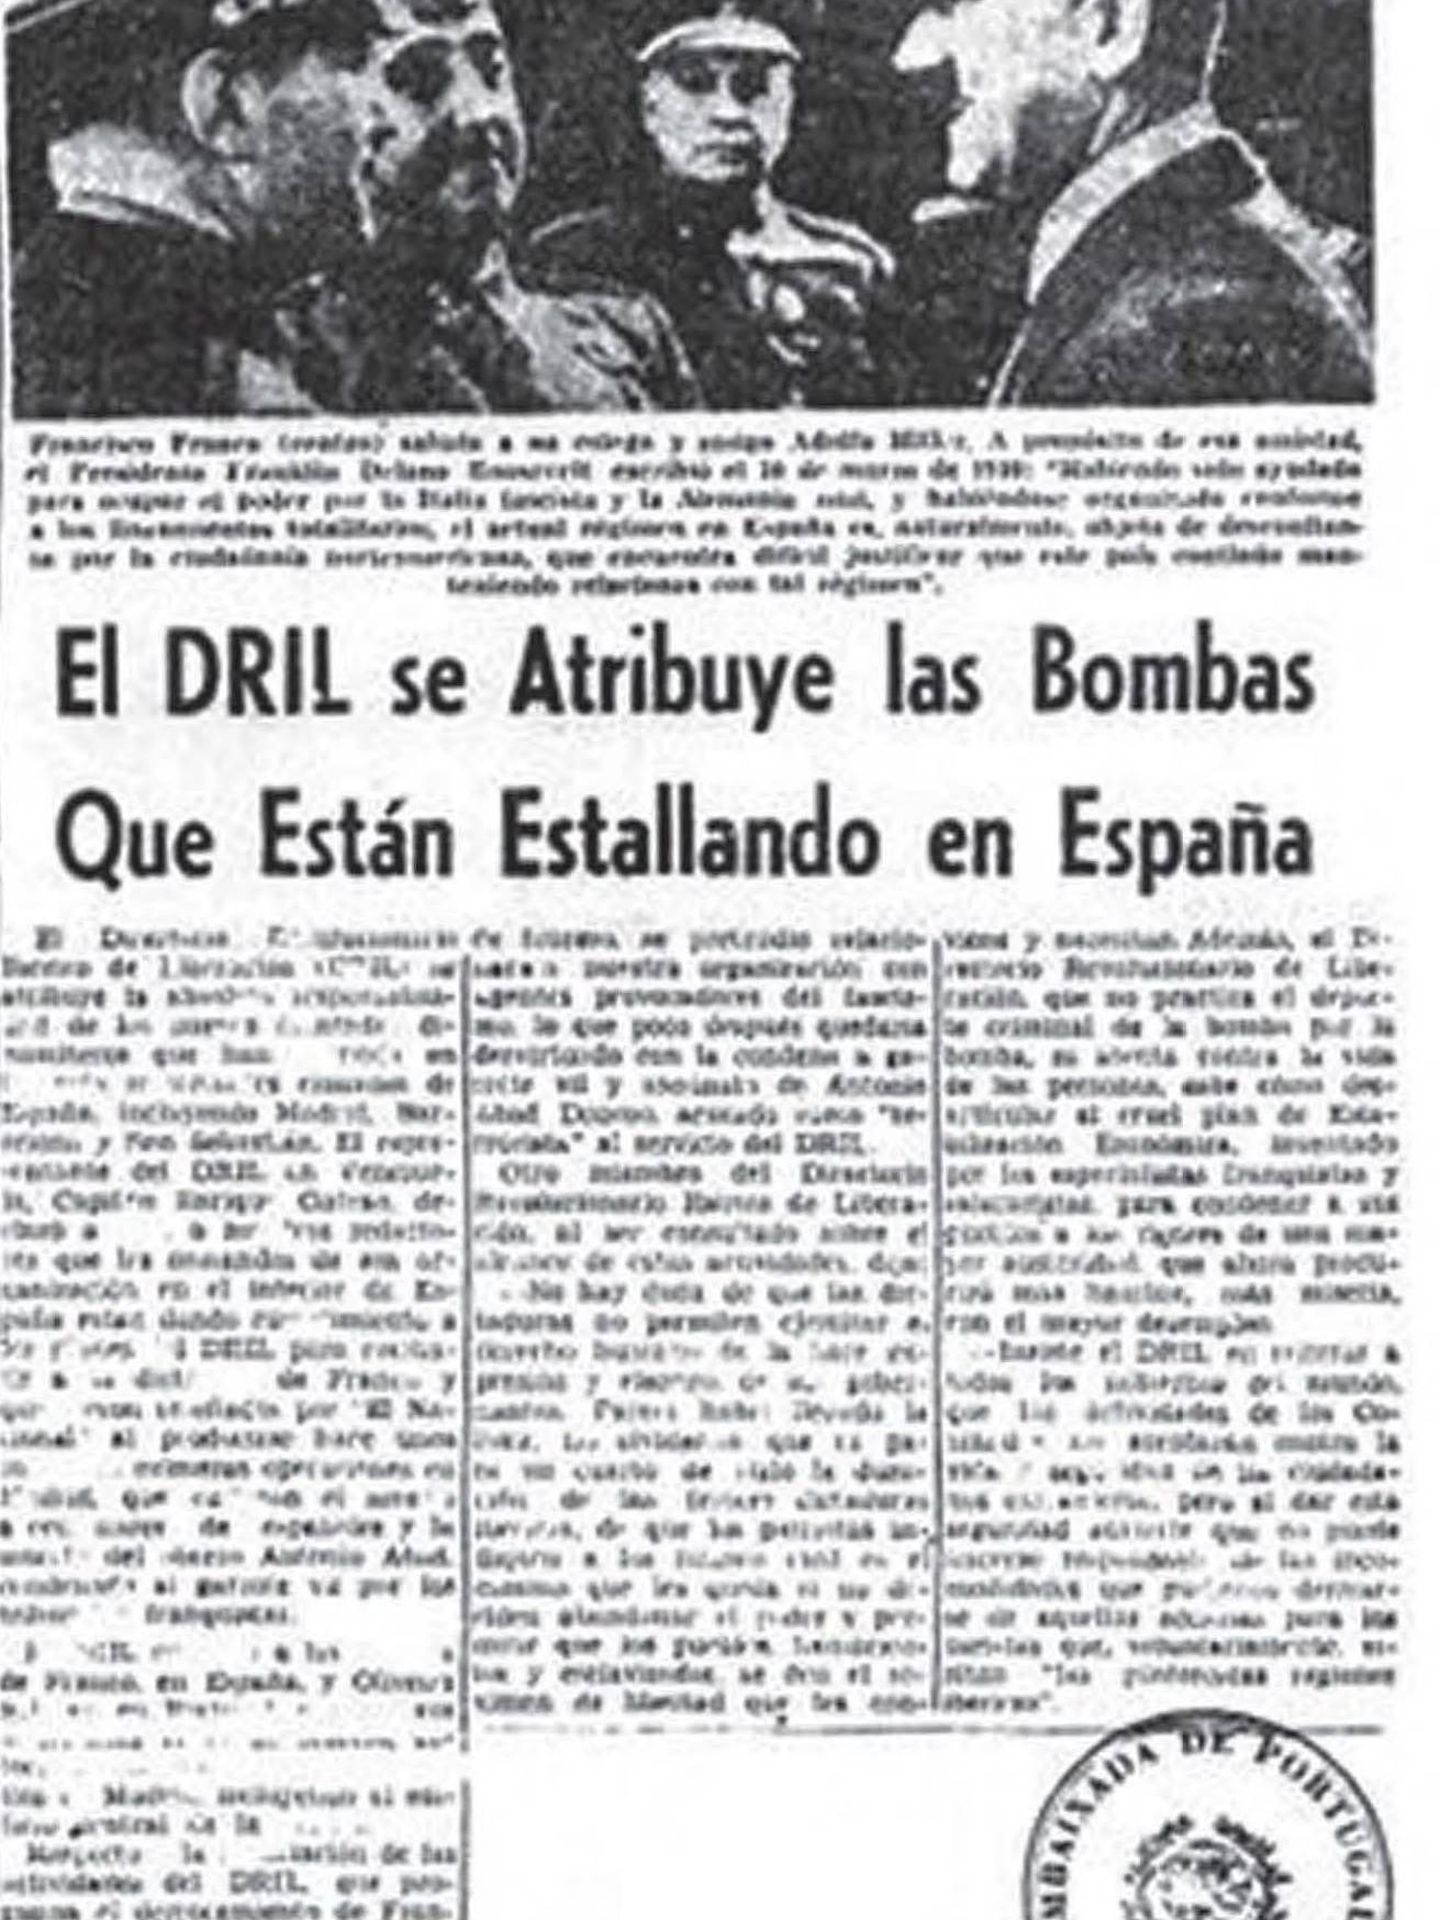 El DRIL reivindica las bombas en España en 'El Nacional'. (Informe del Centro Memorial)